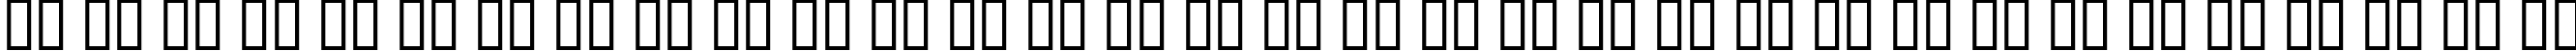 Пример написания русского алфавита шрифтом Digital Readout CondUpright